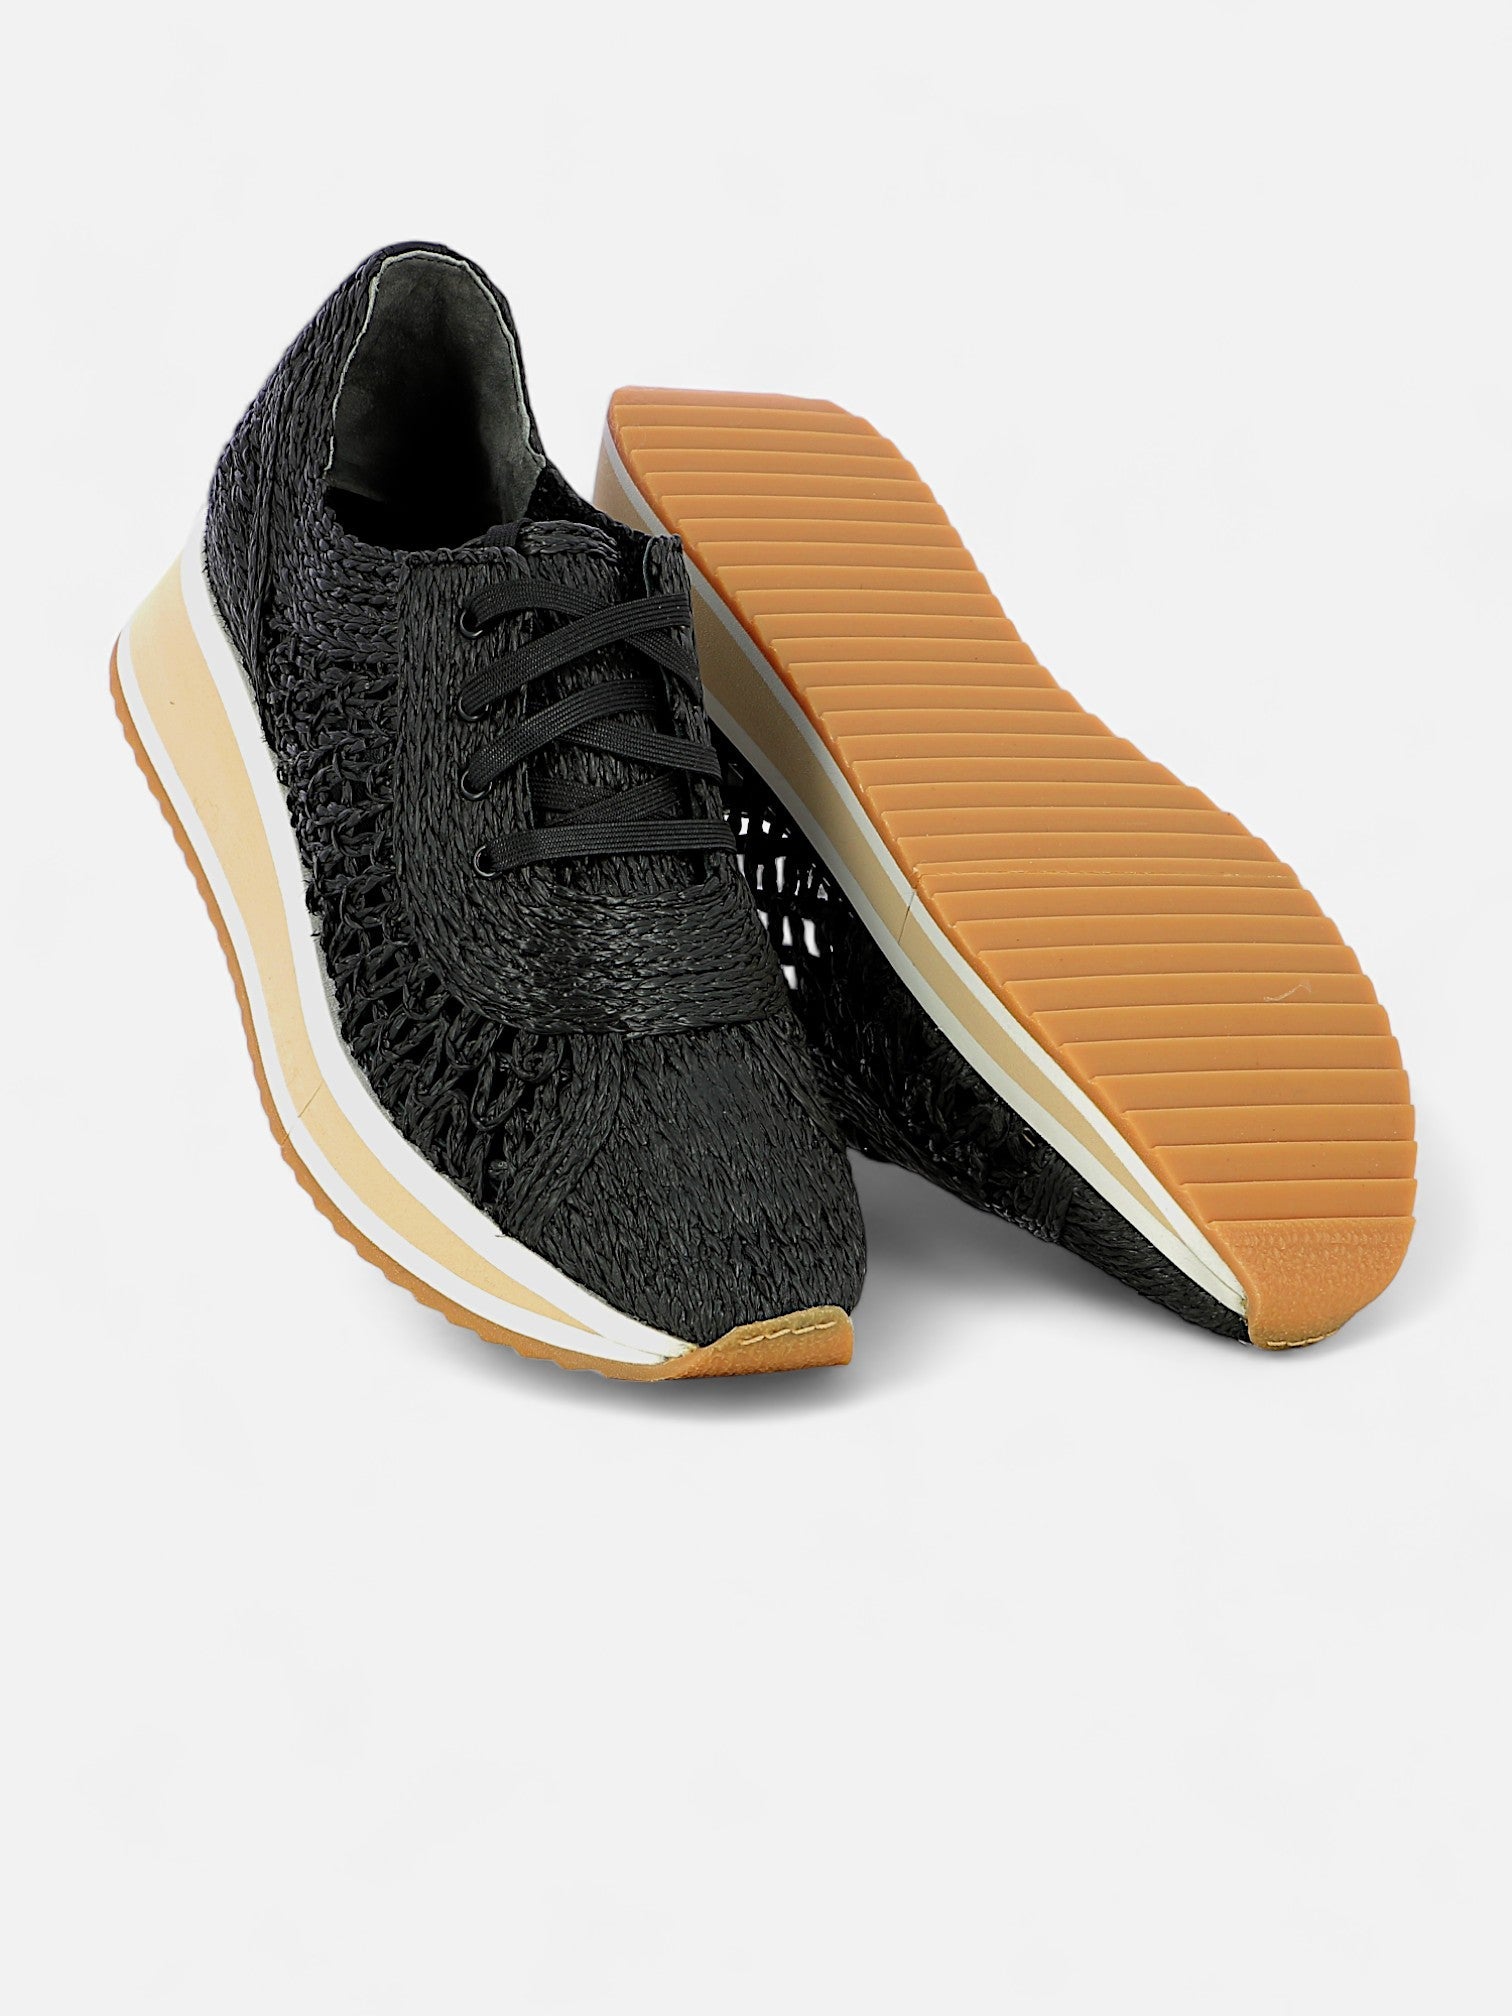 SNEAKERS - OZAN sneakers, braided fibers black - 3606064004991 - Clergerie Paris - Europe